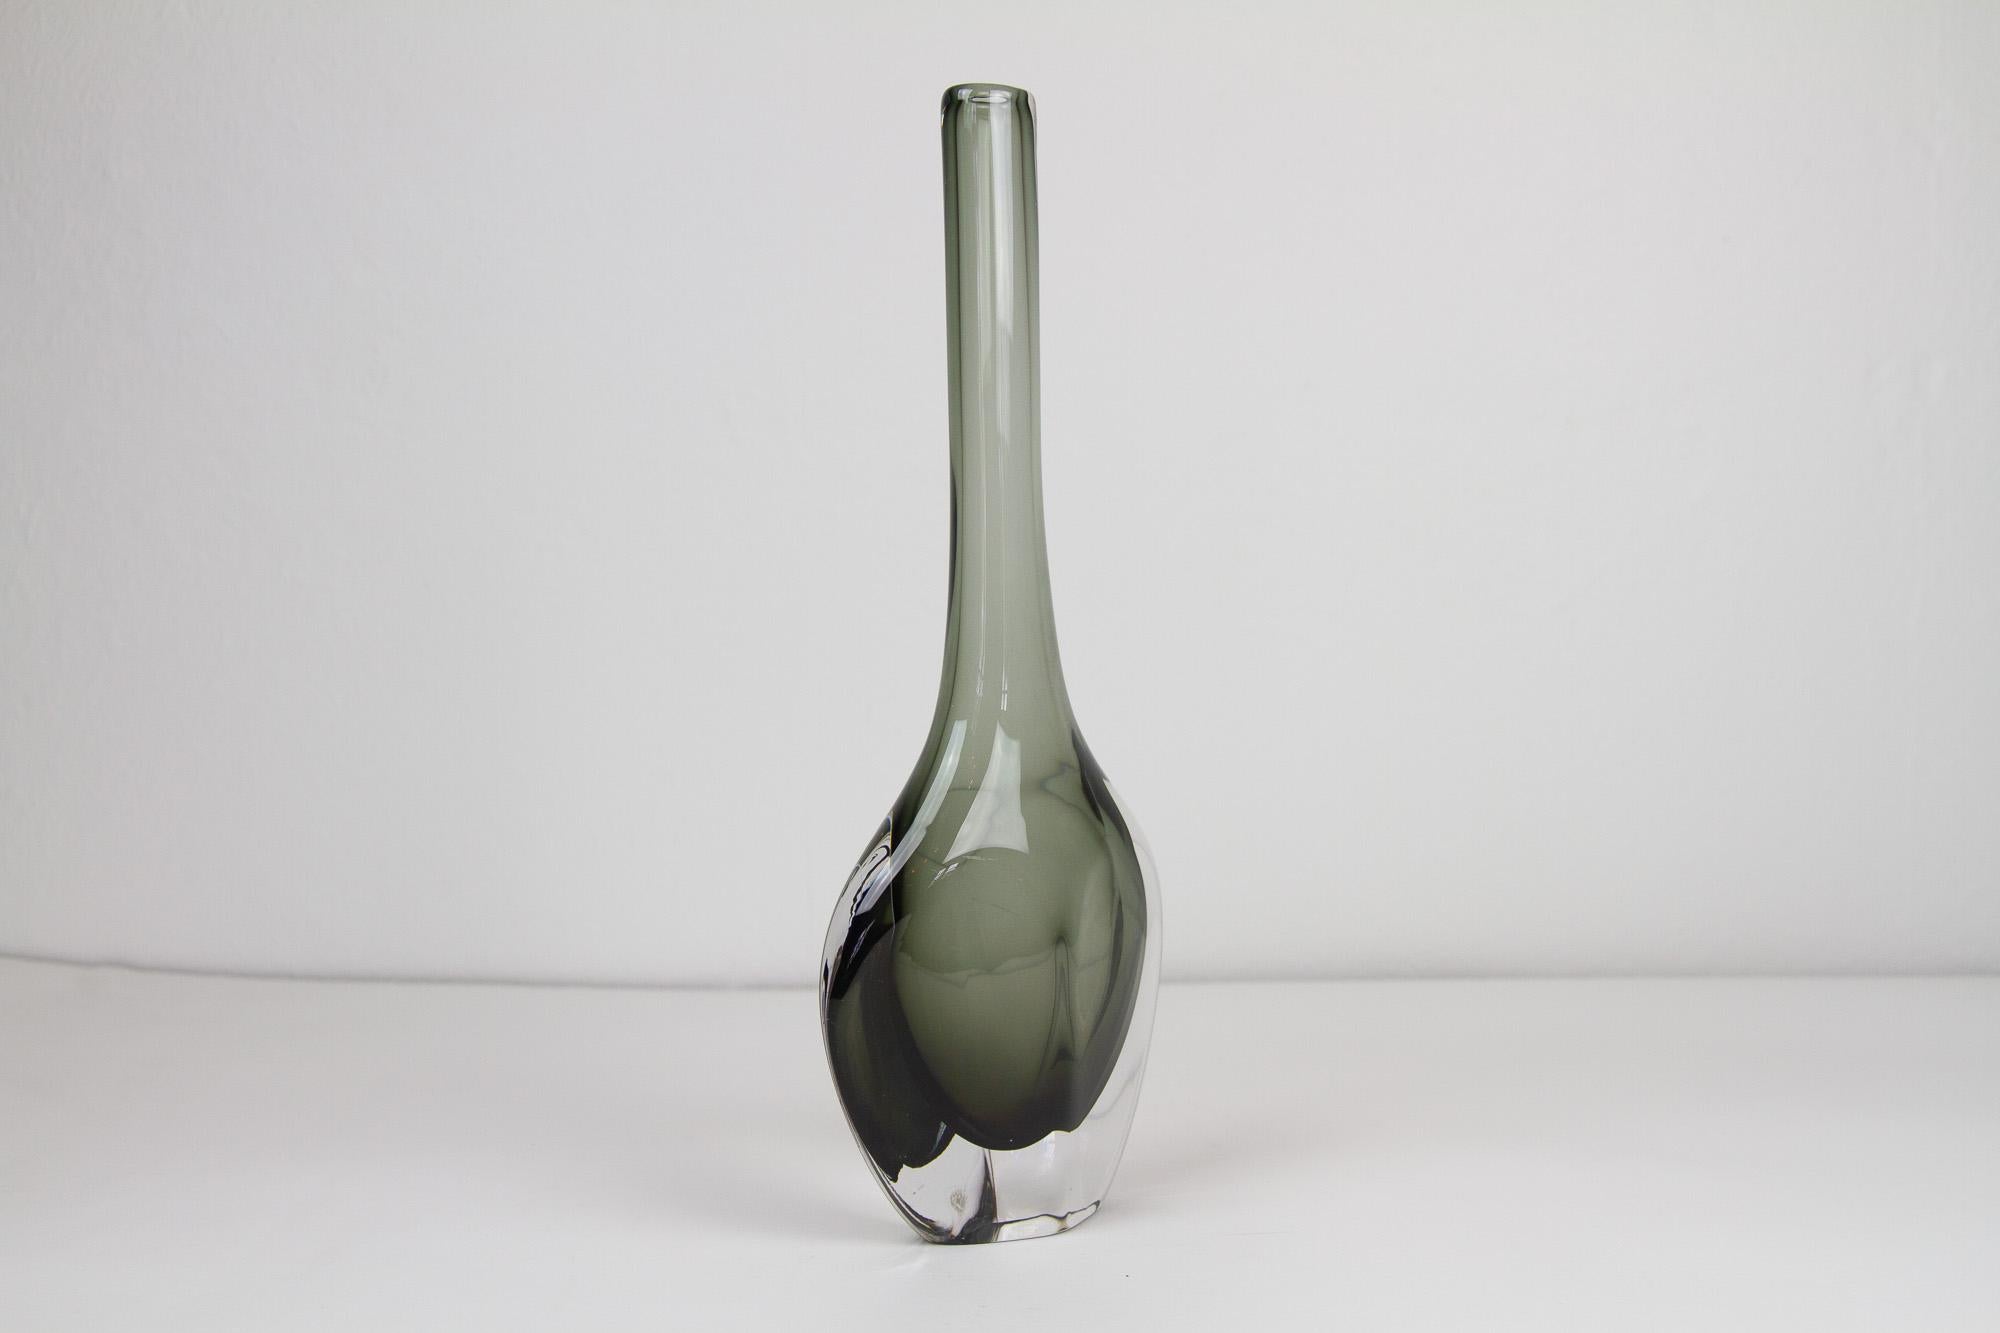 Swedish Scandinavian Modern Glass Vase by Nils Landberg for Orrefors, 1950s For Sale